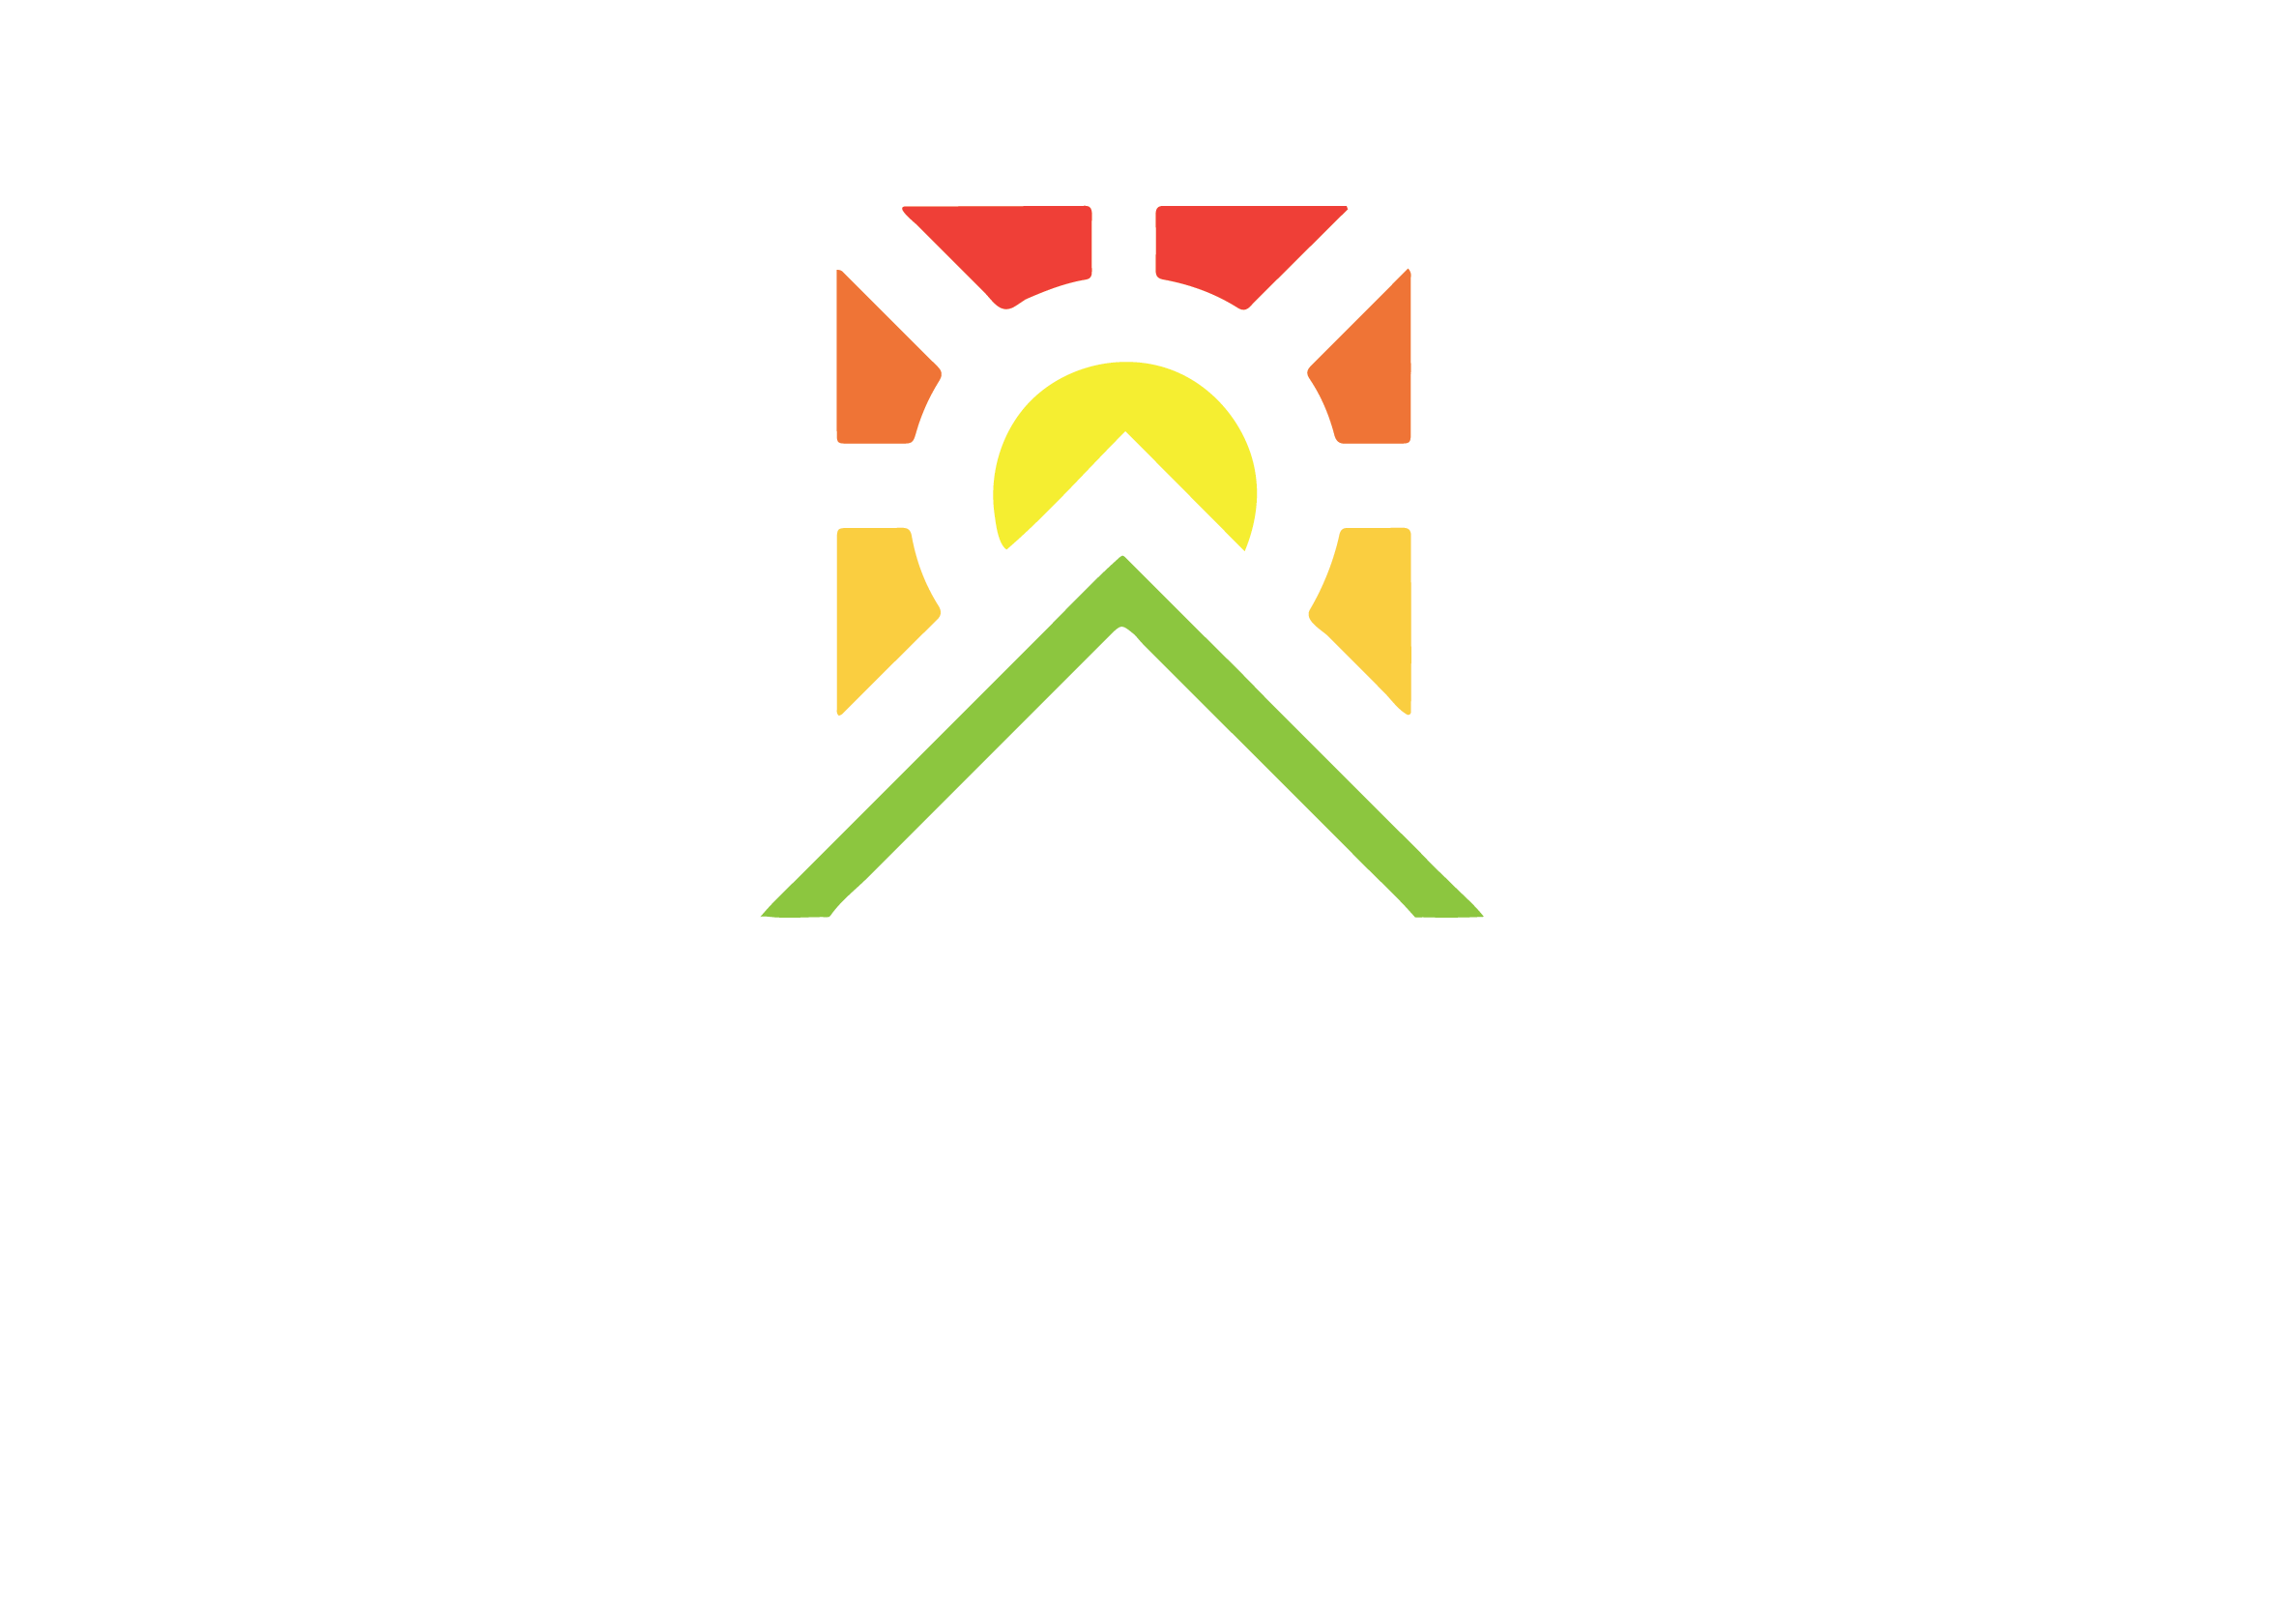 City of Weston